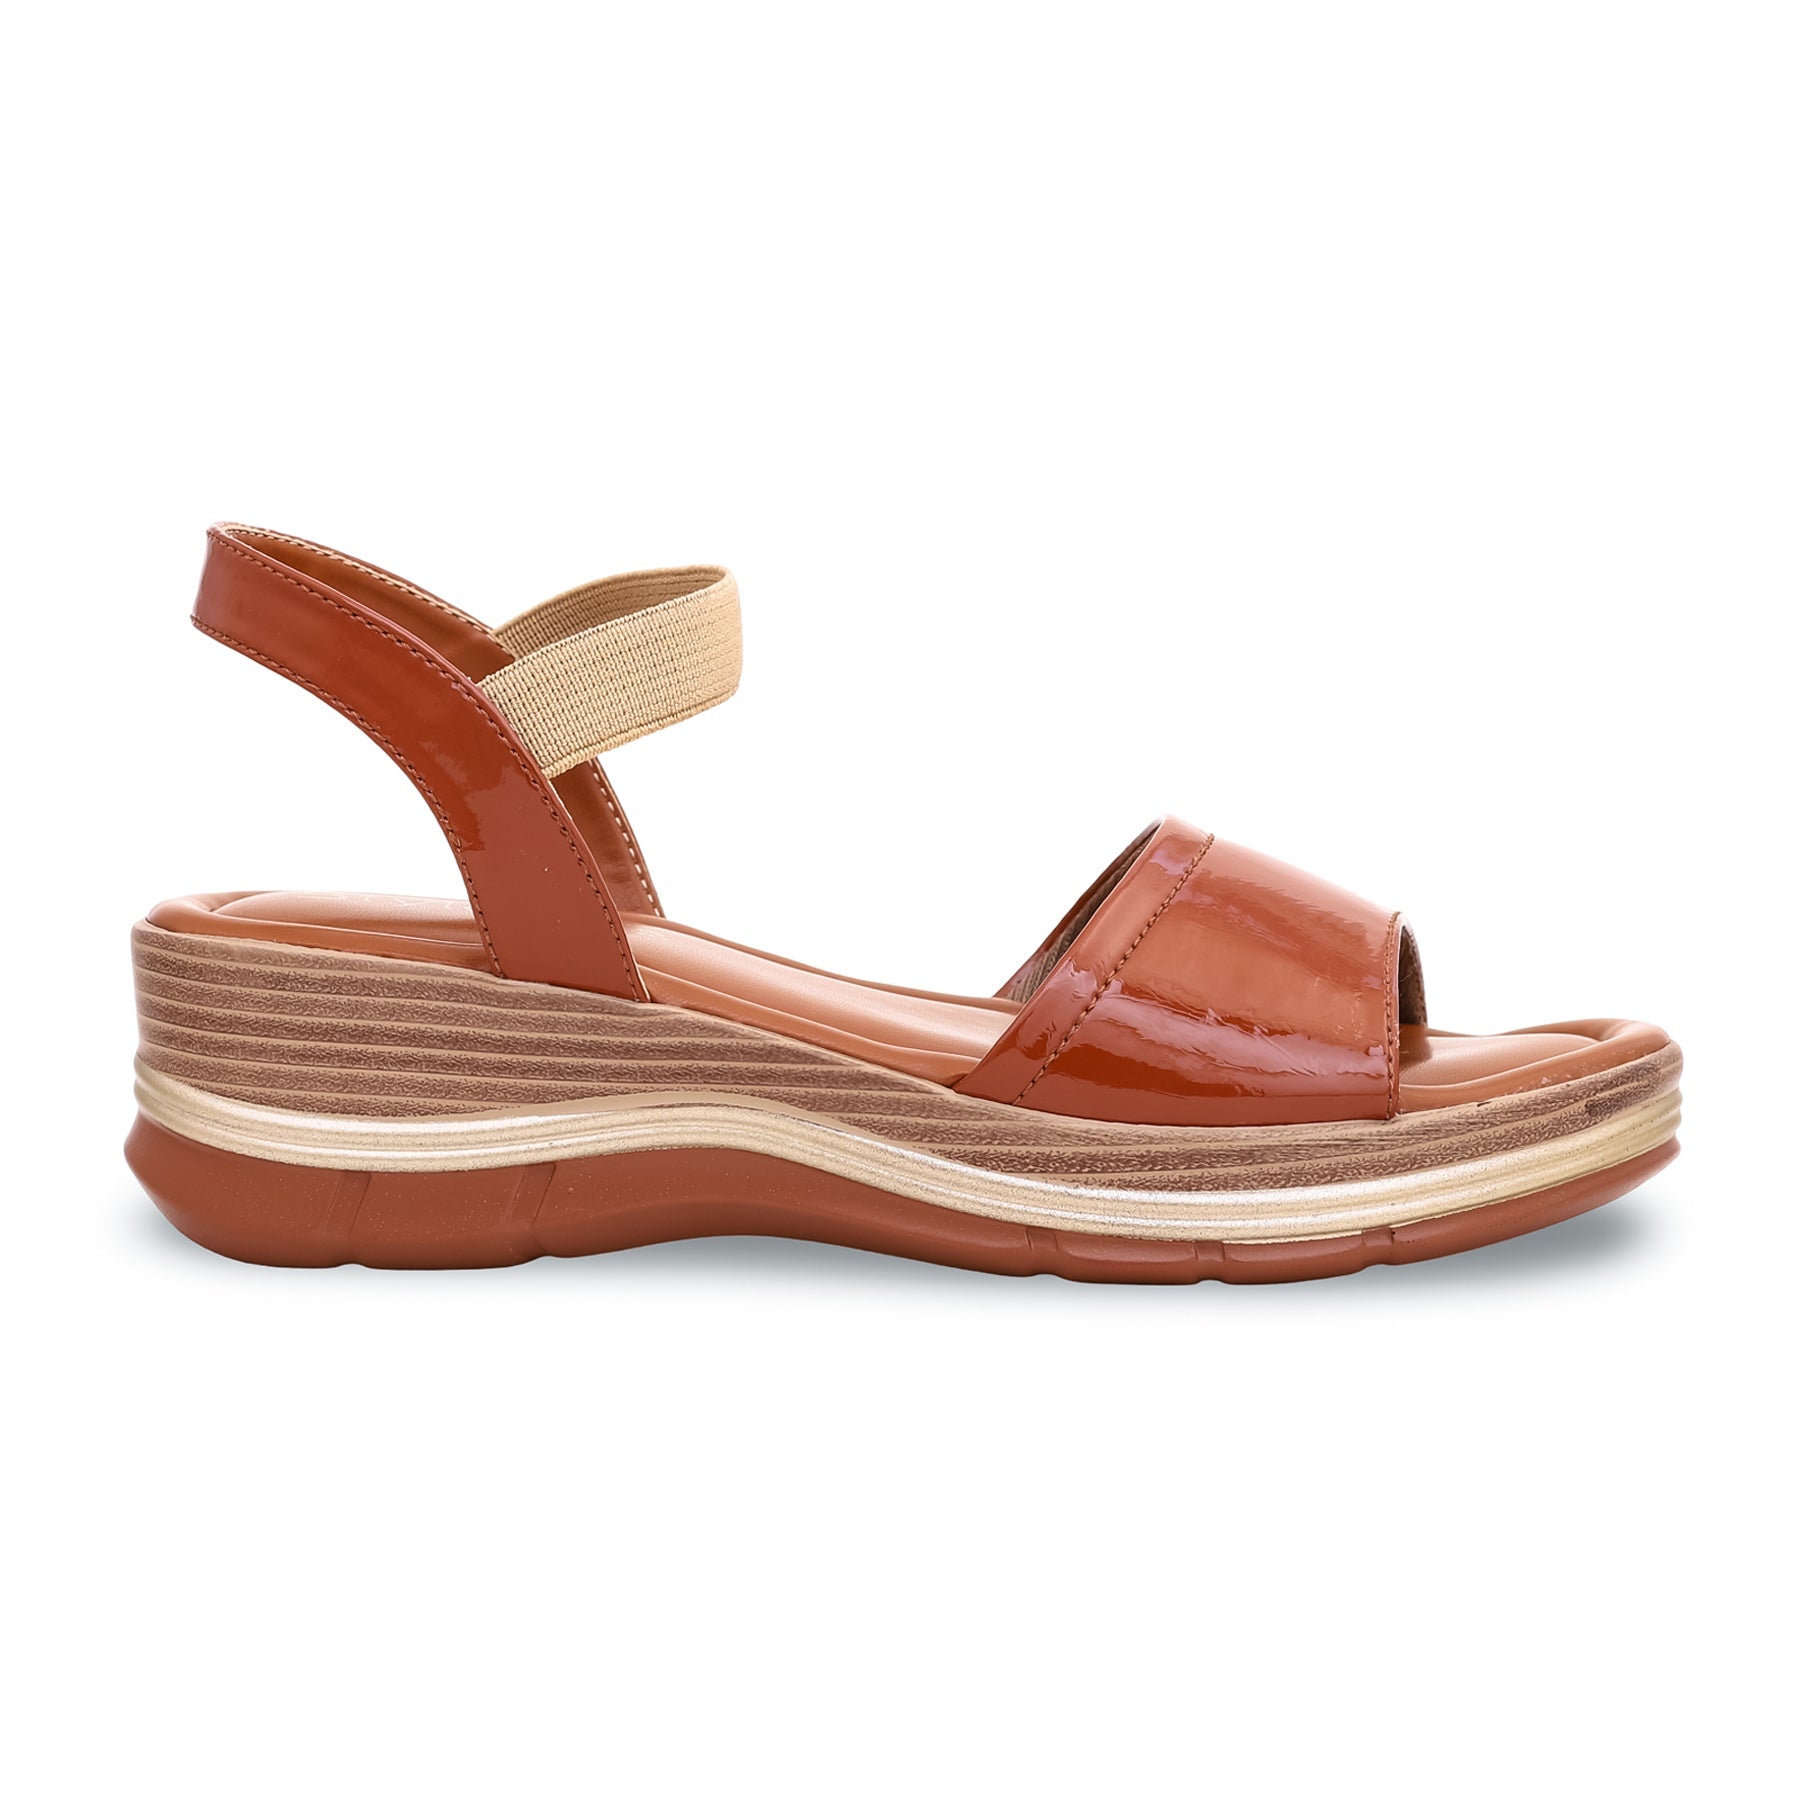 Rust Formal Sandal PU0144